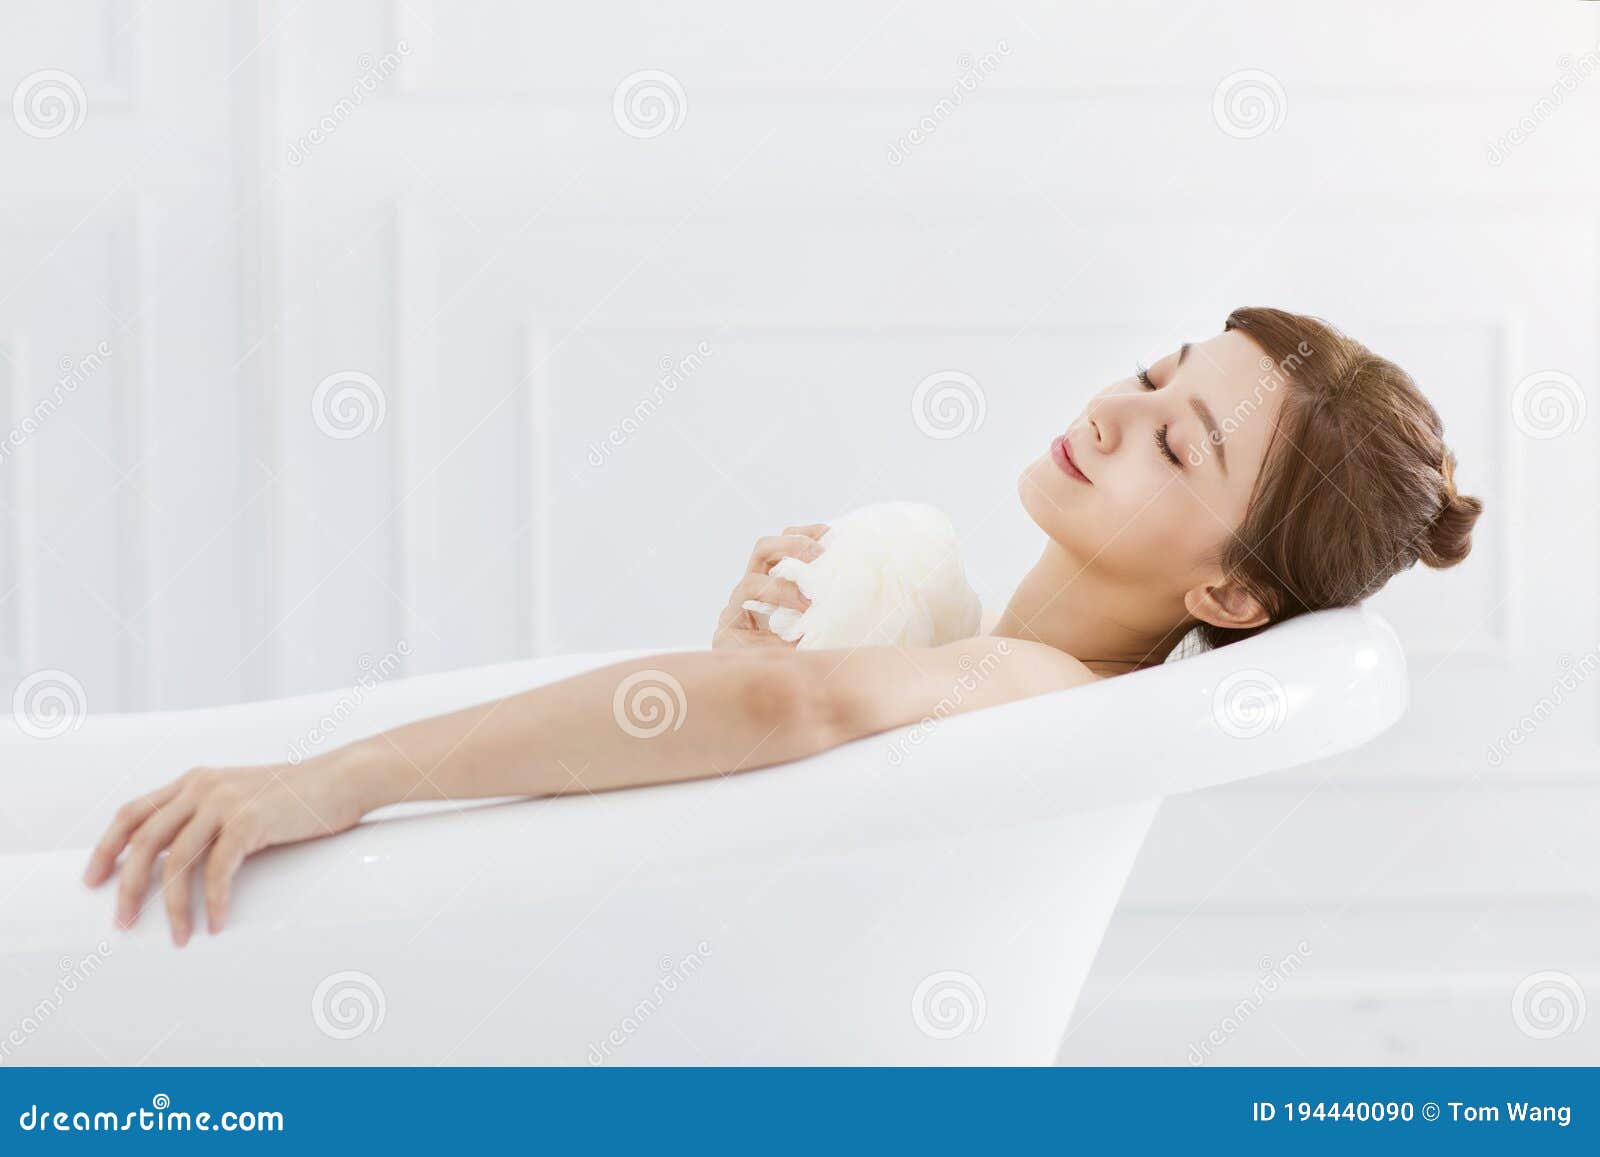 young woman take a bath in bathtub